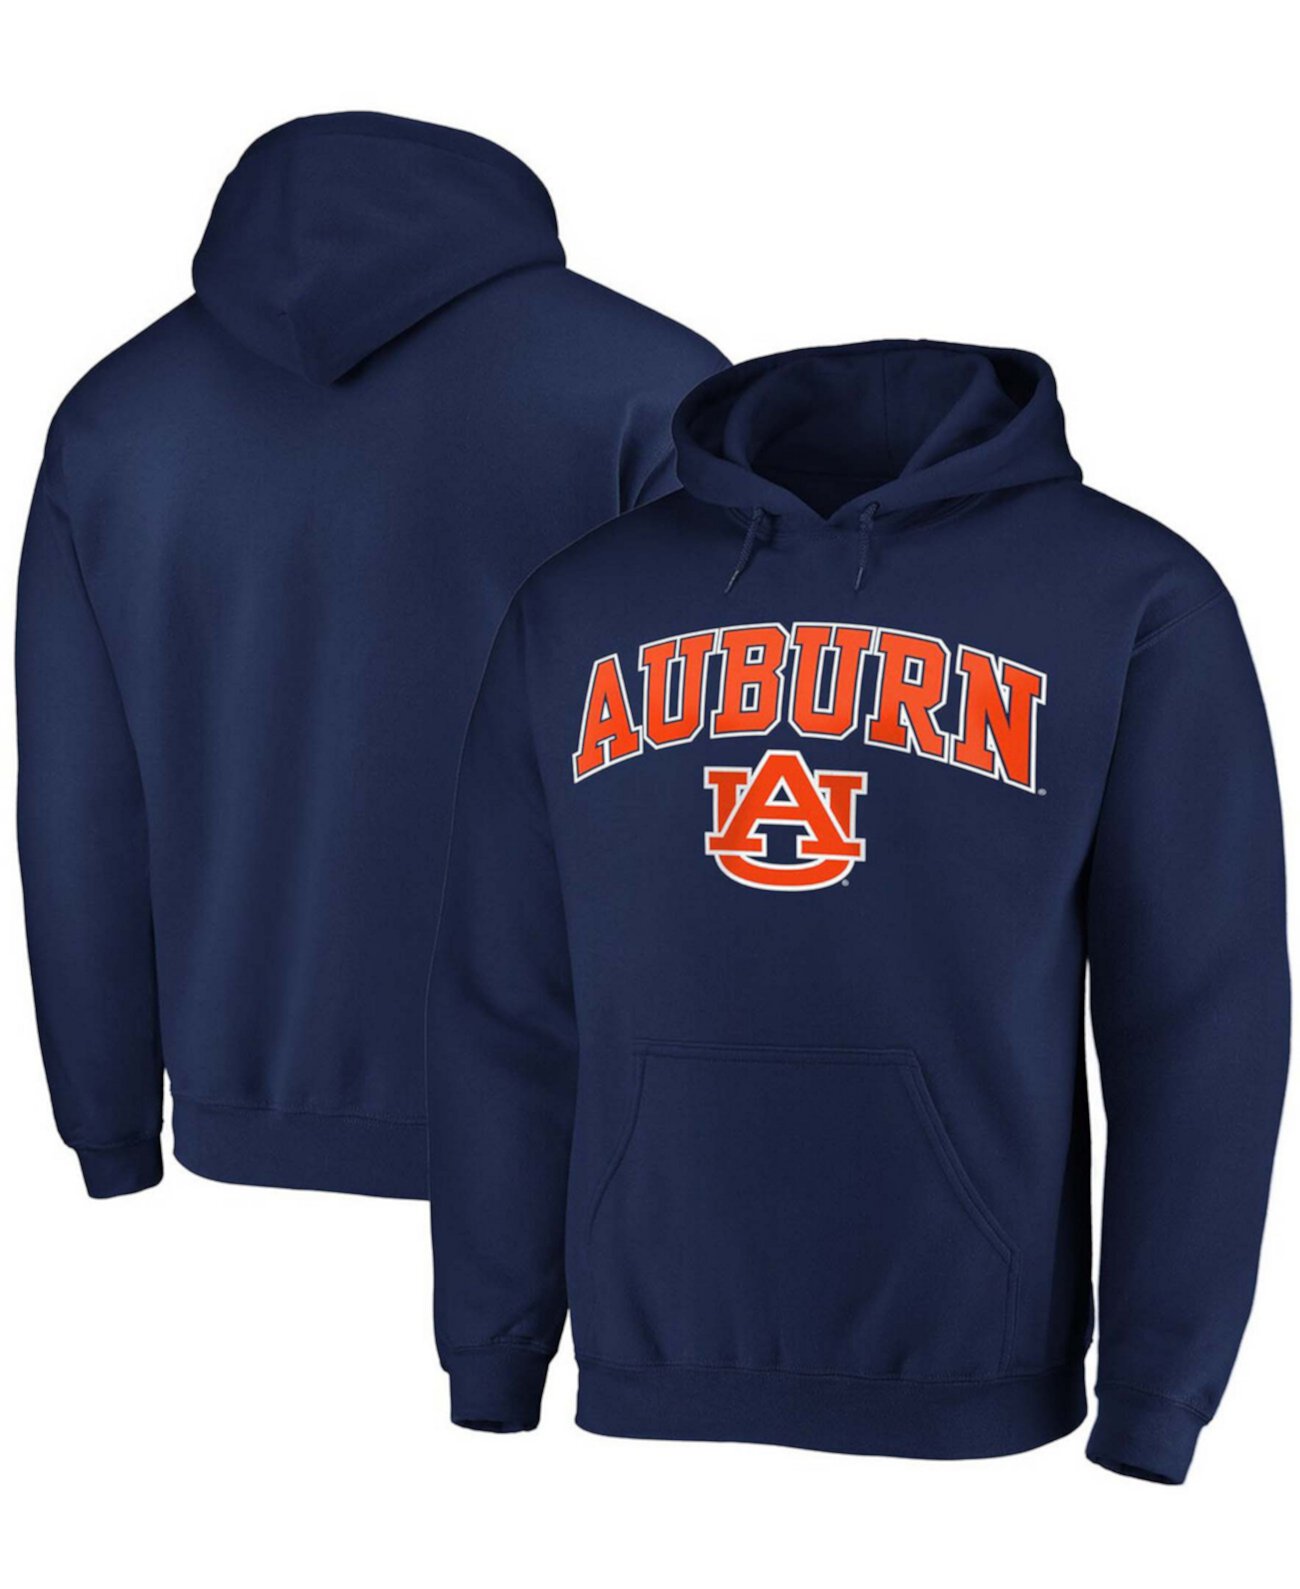 Толстовка мужская темно-синяя Auburn Tigers Campus Pullover Fanatics